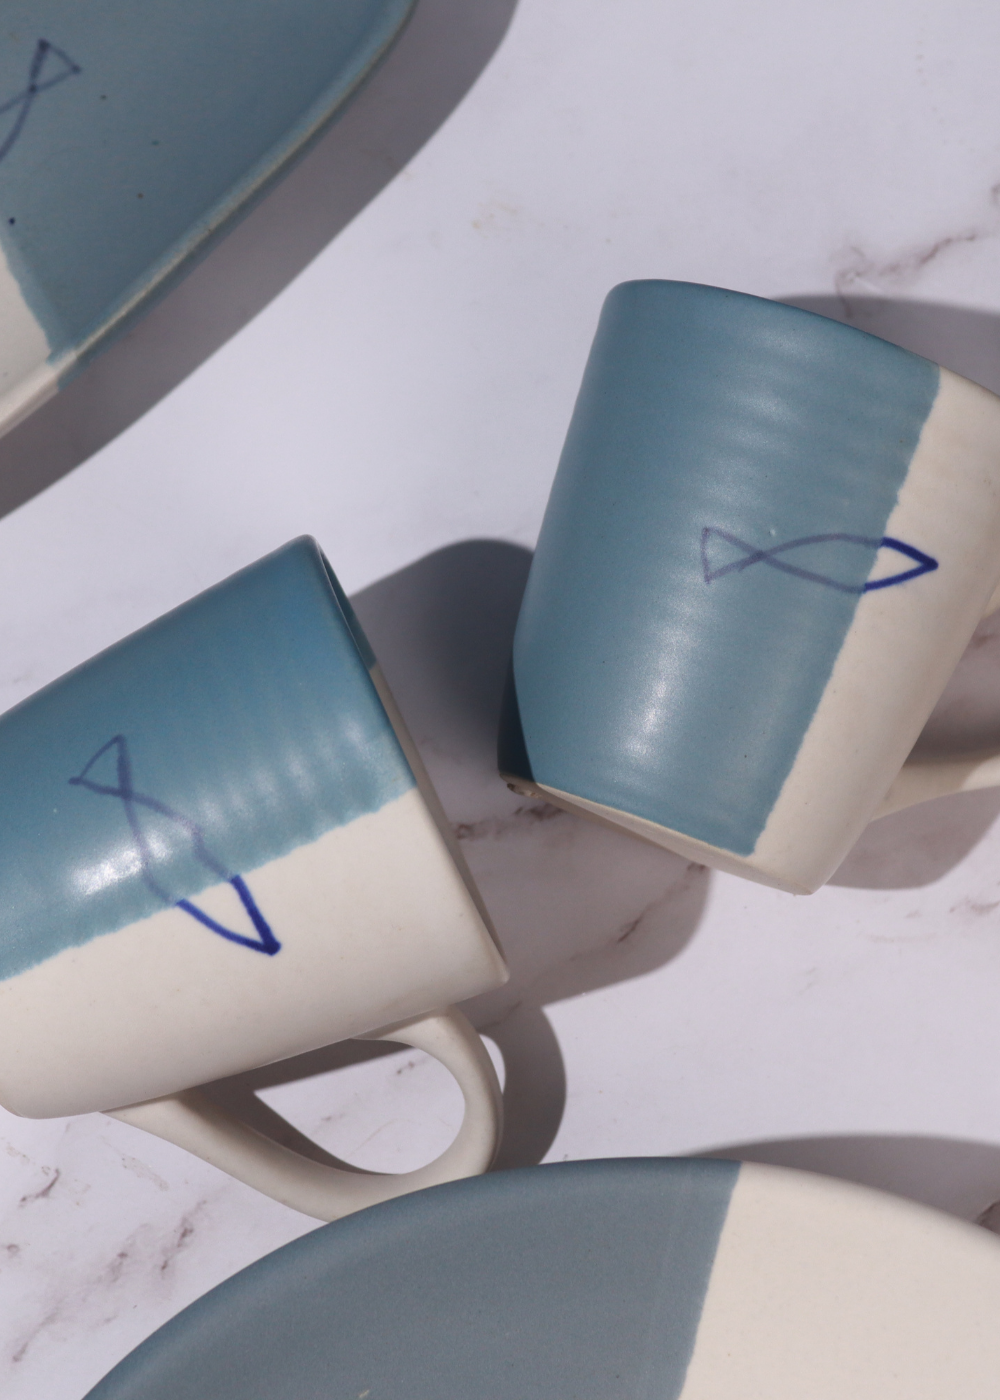 Handmade ceramic mugs white and blue